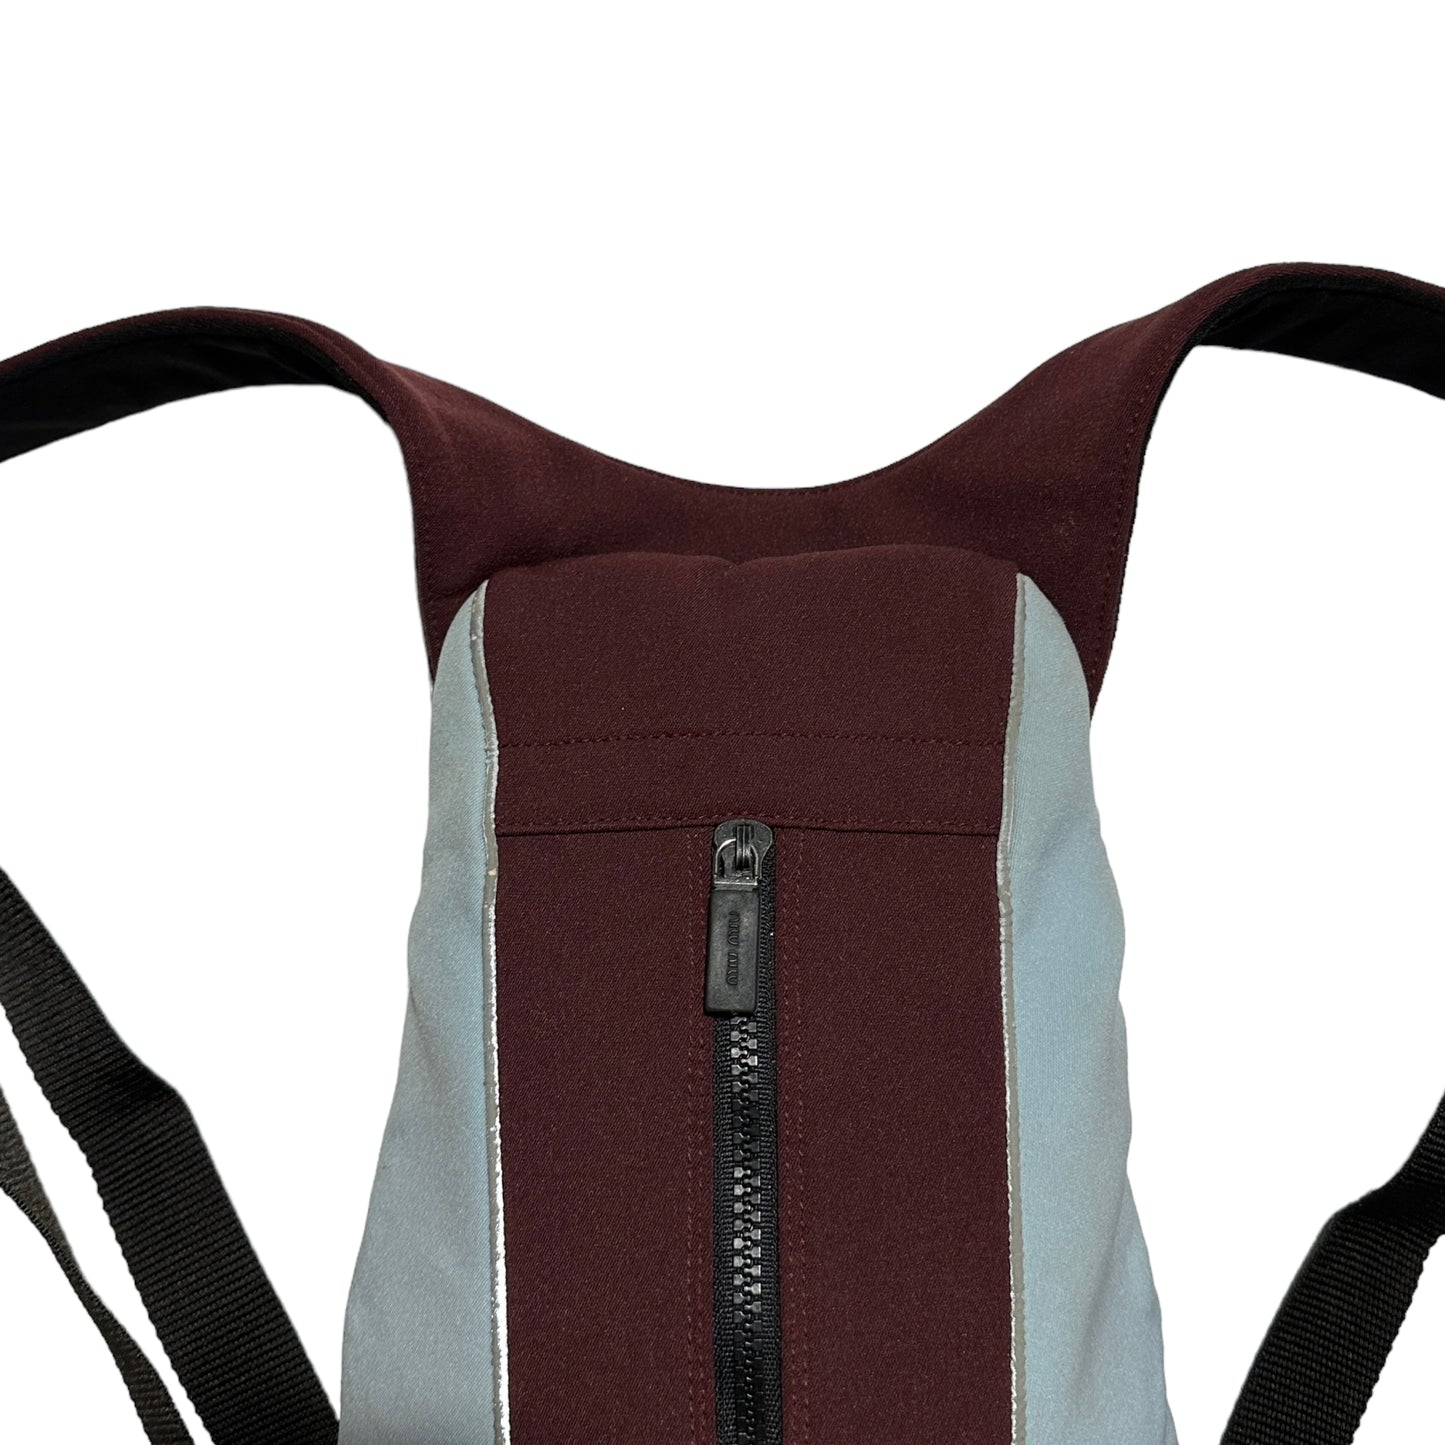 S/S 2000 Miu Miu Neoprene  Mini Backpack Bag